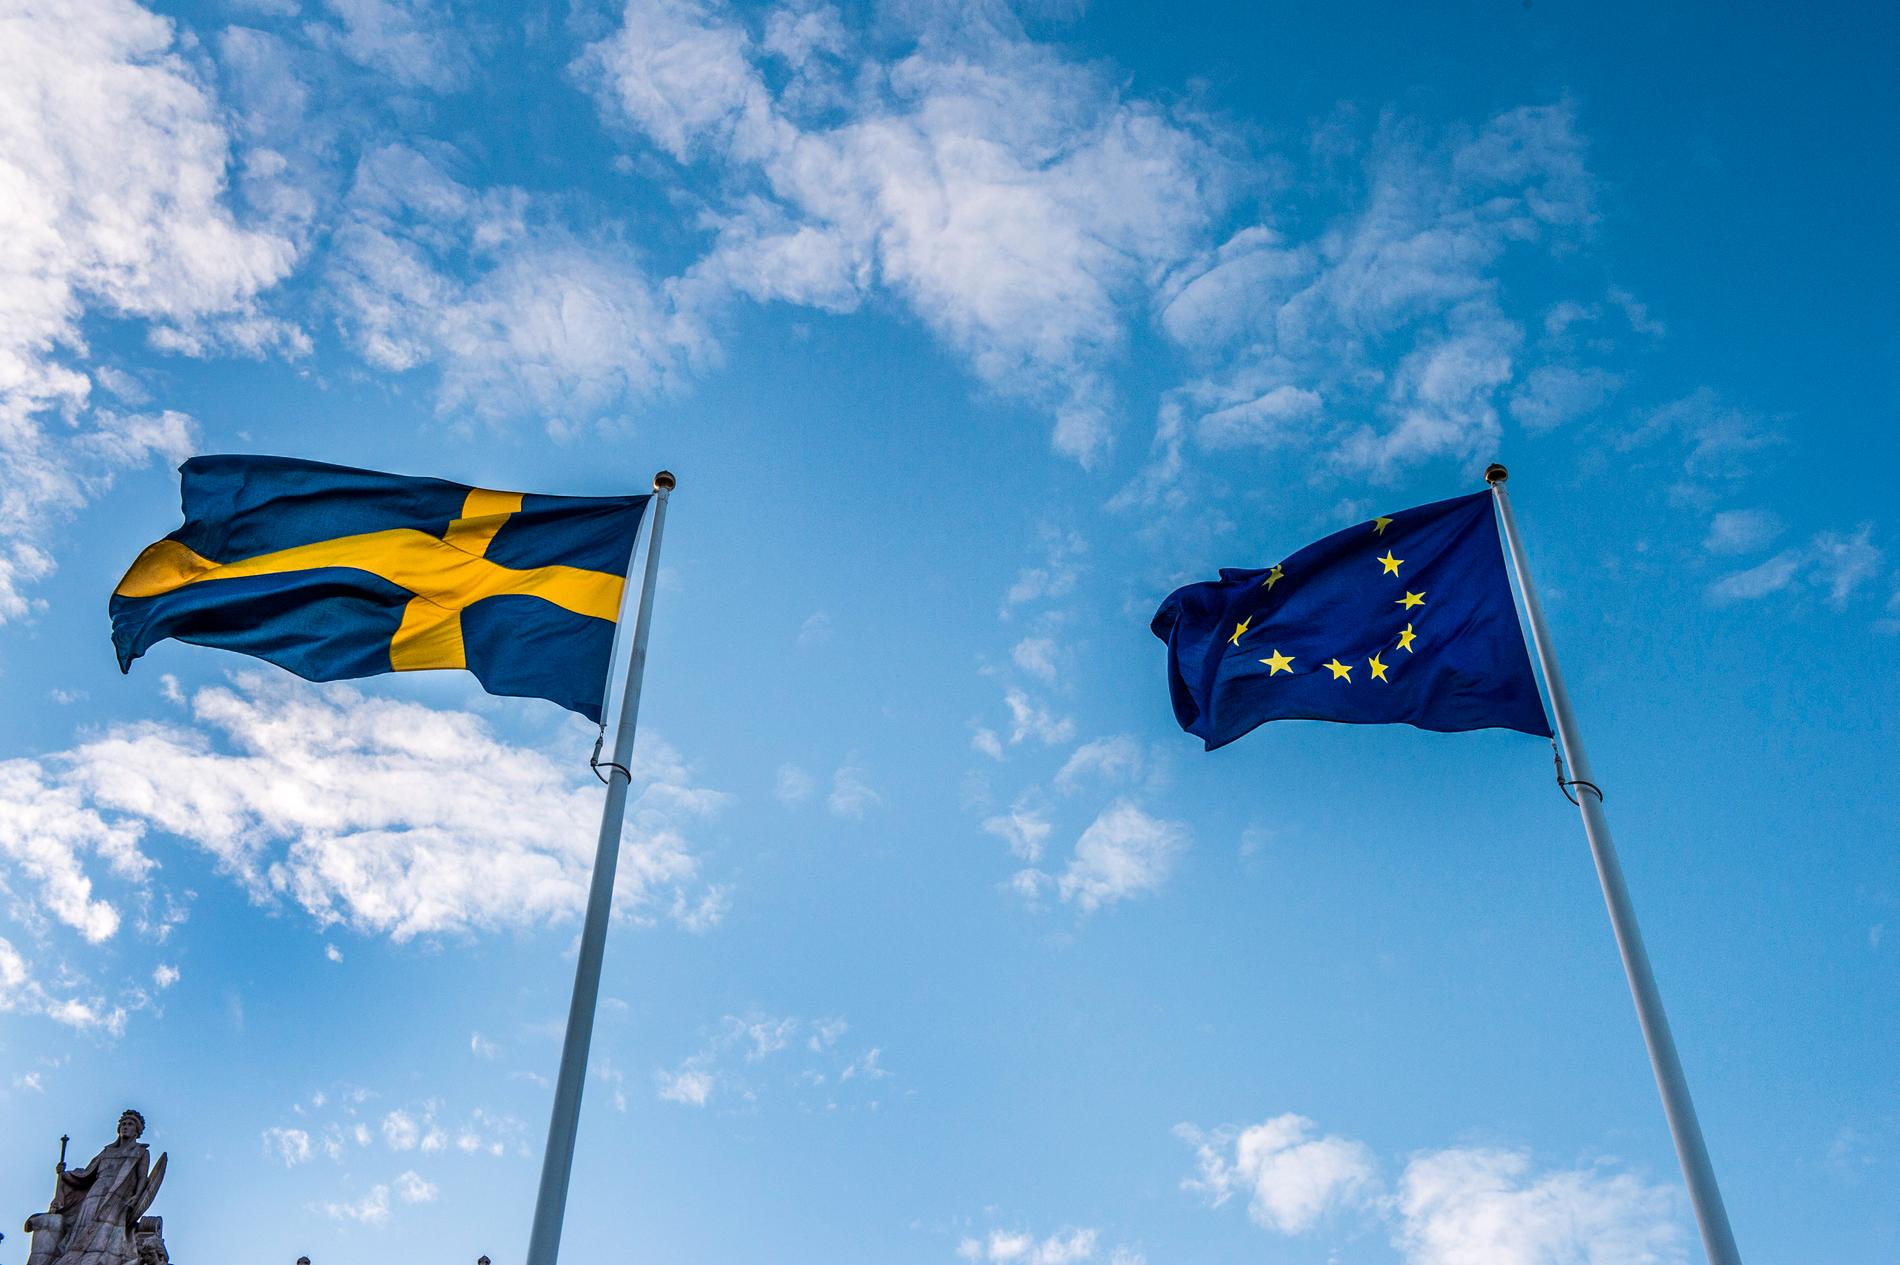 Svenskarnas stöd för EU är rekordhögt enligt senaste Som-undersökningen. Arkivbild.